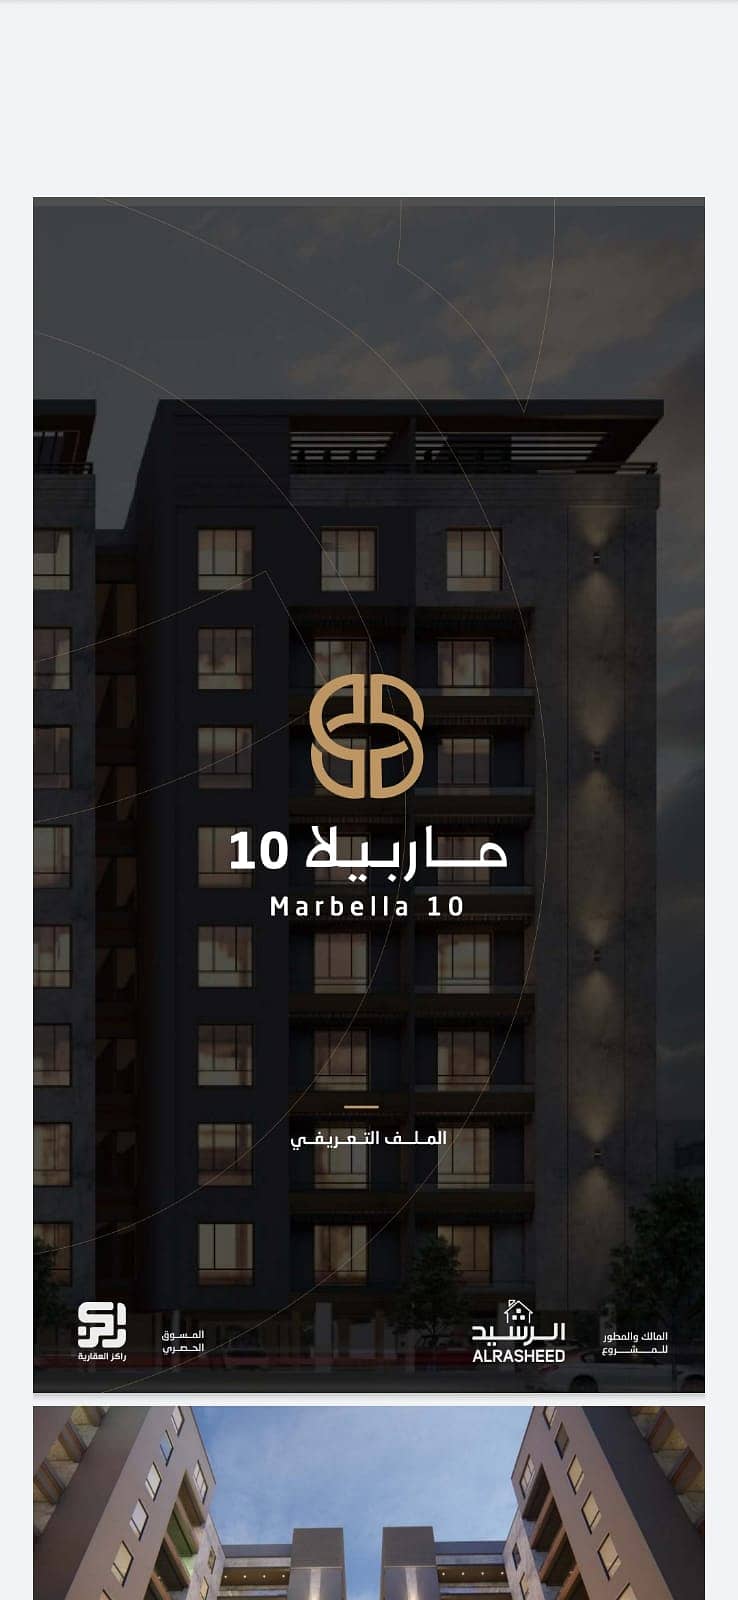 For sale 192 apartments, Marbella 10 project, in Al Hamra, Al Khobar